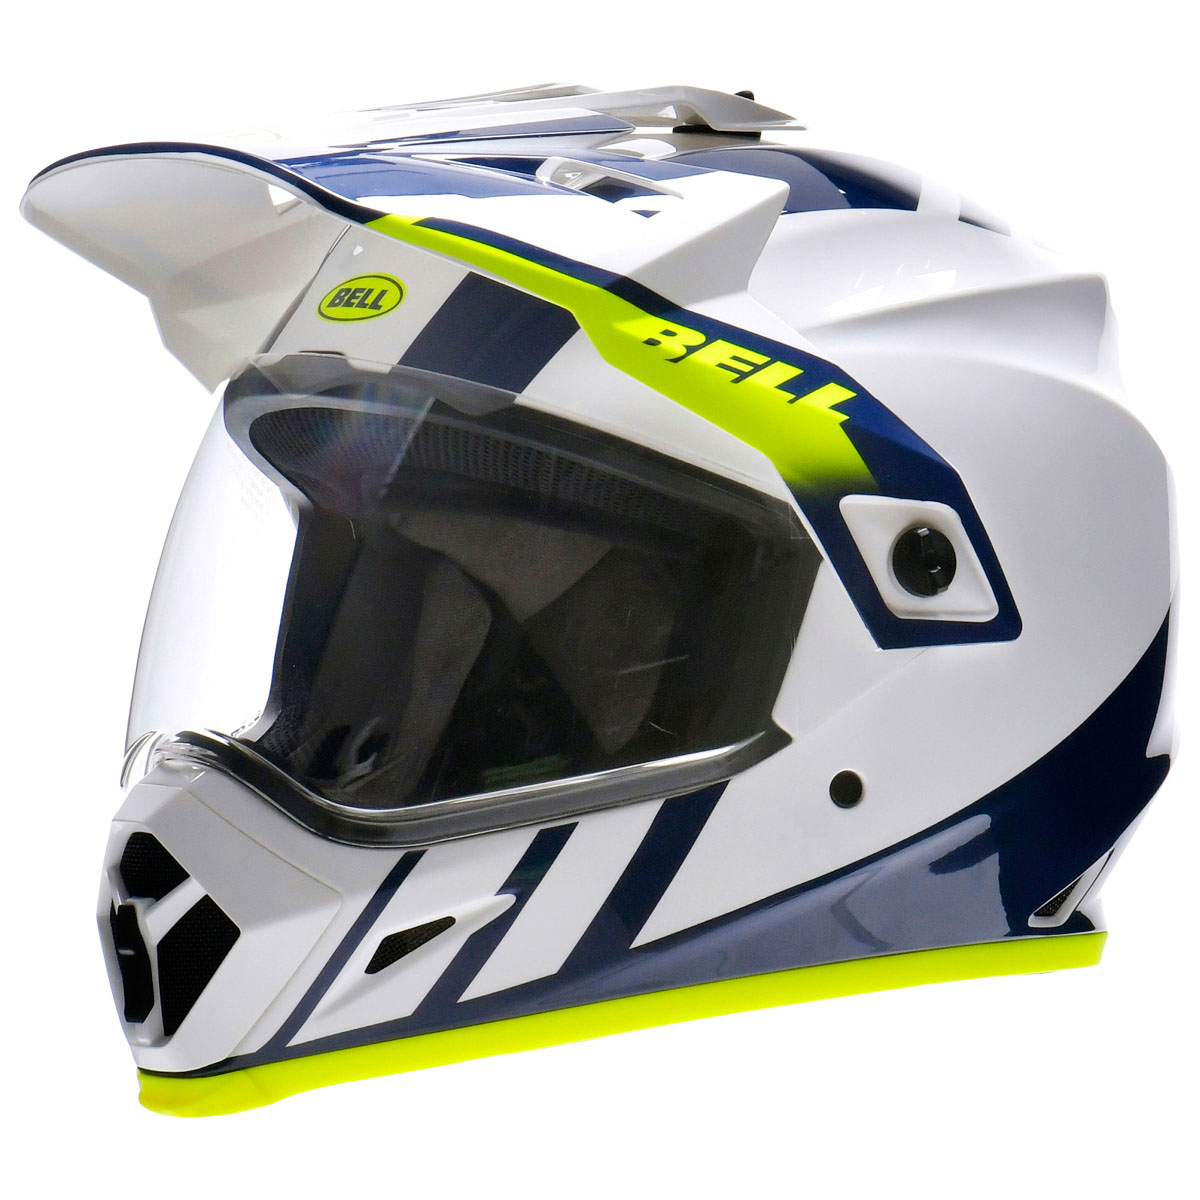 バイクヘルメット オフロードヘルメット モトクロスヘルメット セットSサイズ青黒